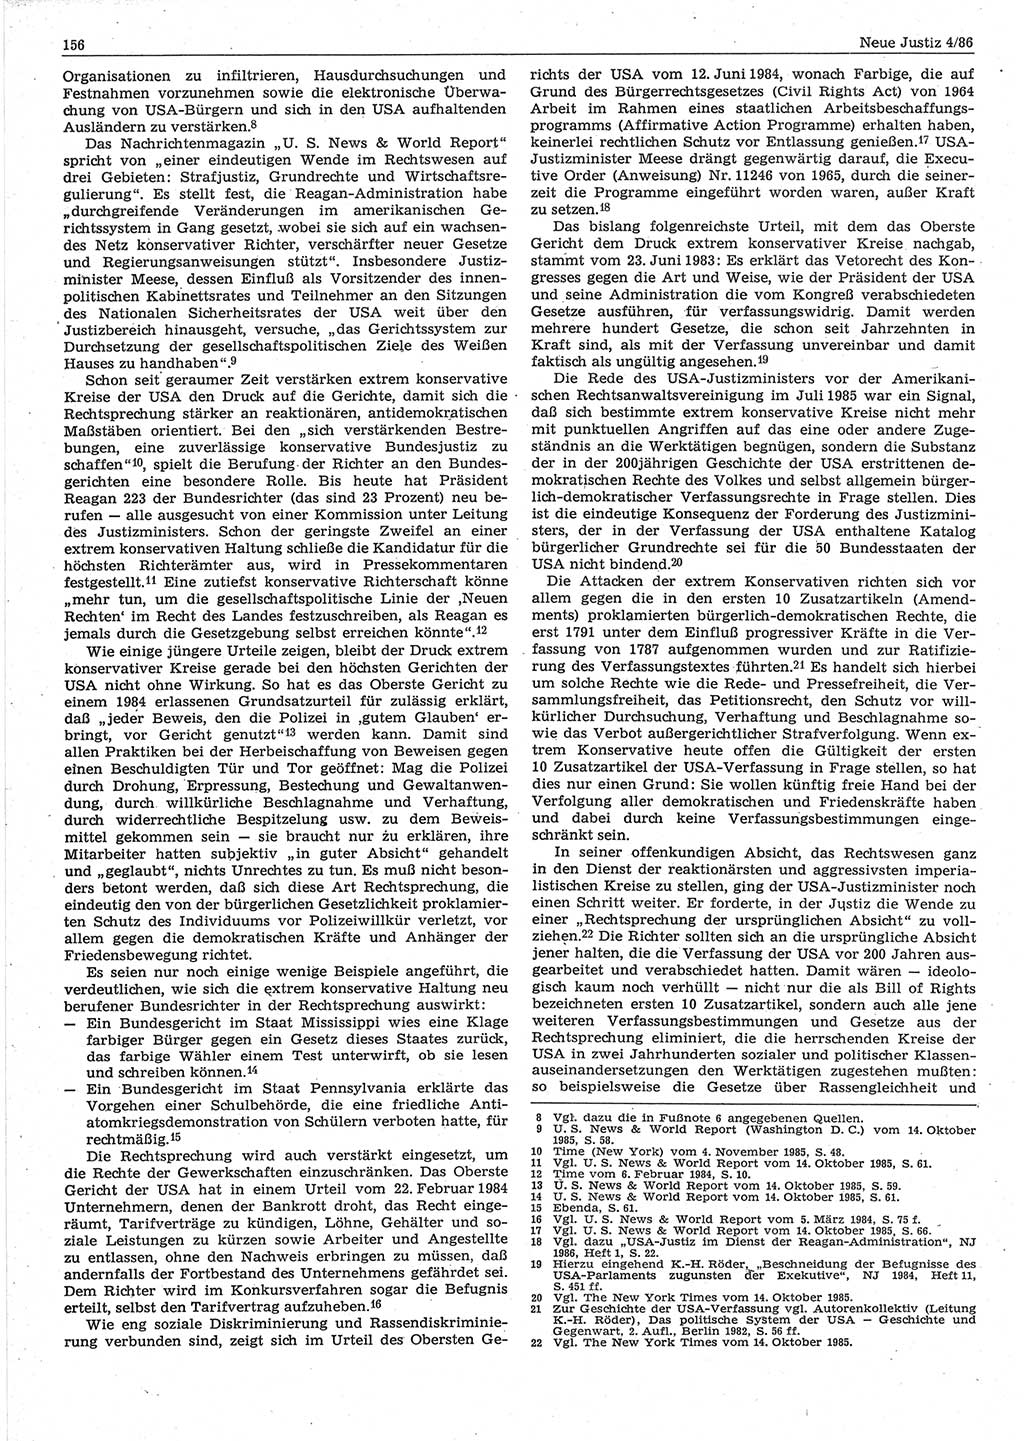 Neue Justiz (NJ), Zeitschrift für sozialistisches Recht und Gesetzlichkeit [Deutsche Demokratische Republik (DDR)], 40. Jahrgang 1986, Seite 156 (NJ DDR 1986, S. 156)